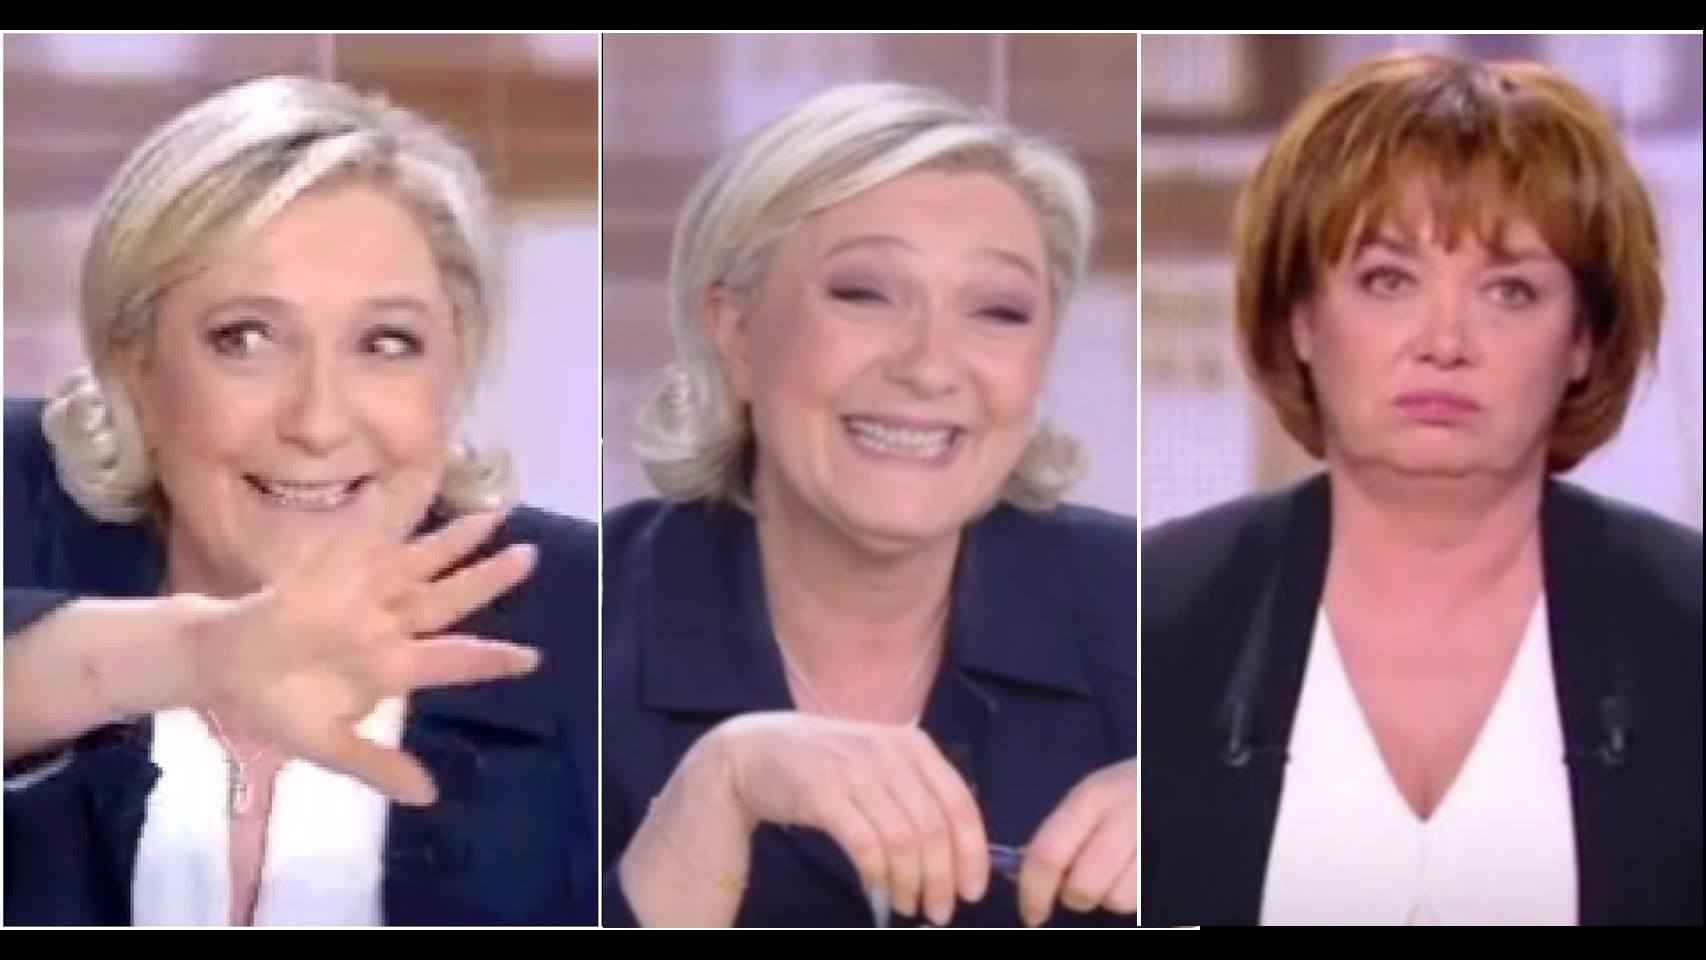 Las caras de Le Pen y la reacción de la moderadora.